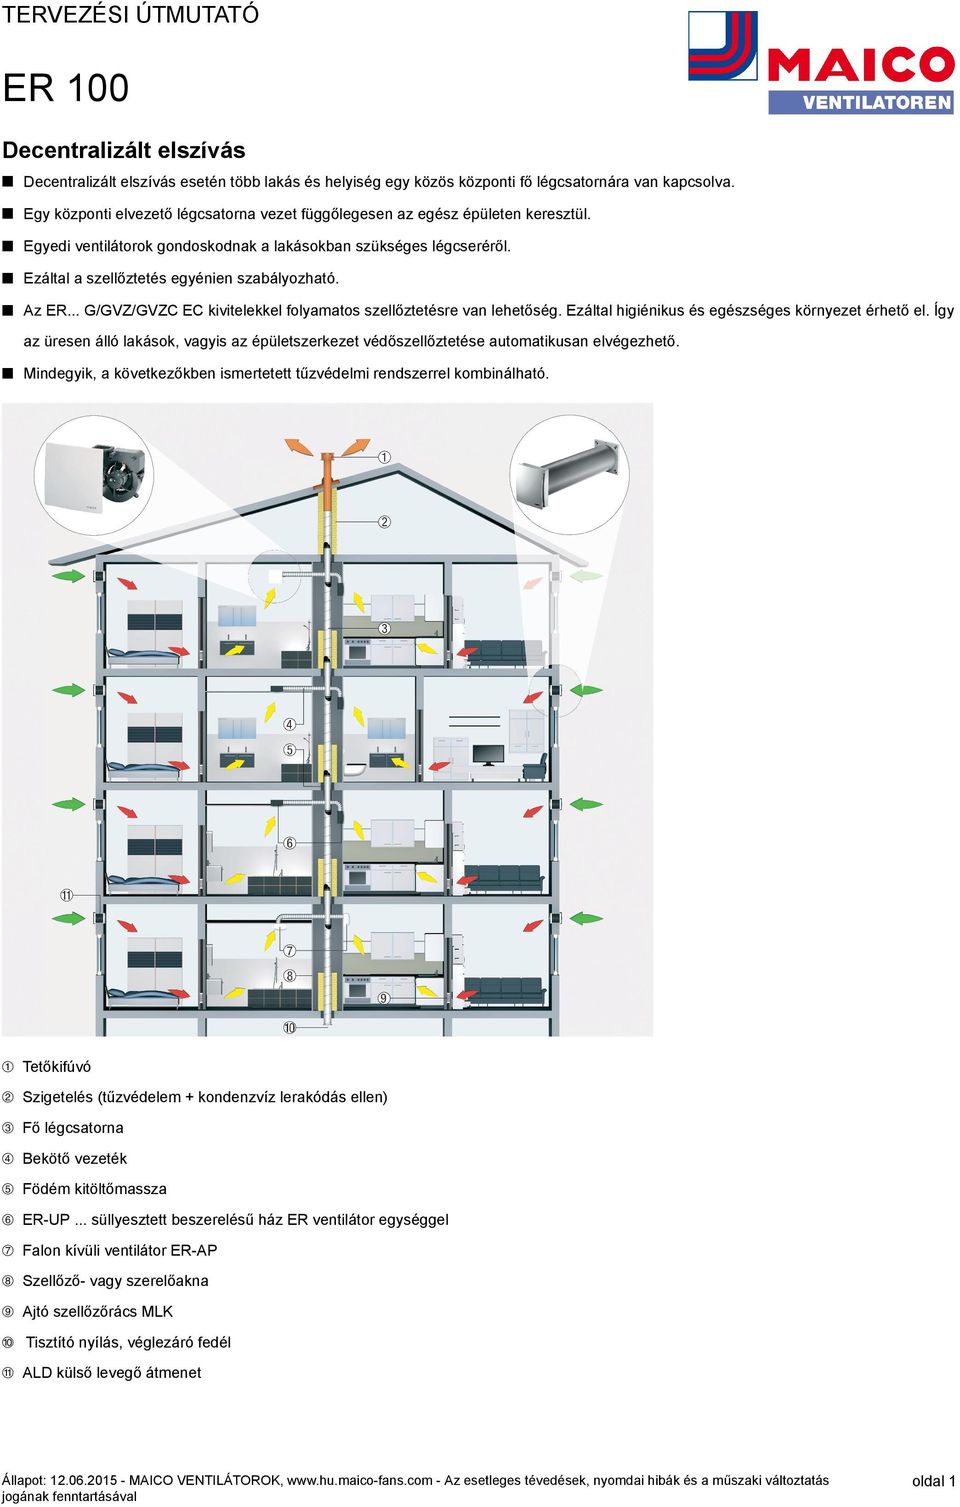 Decentralizált elszívás esetén több lakás és helyiség egy közös központi fő  légcsatornára van kapcsolva. - PDF Ingyenes letöltés